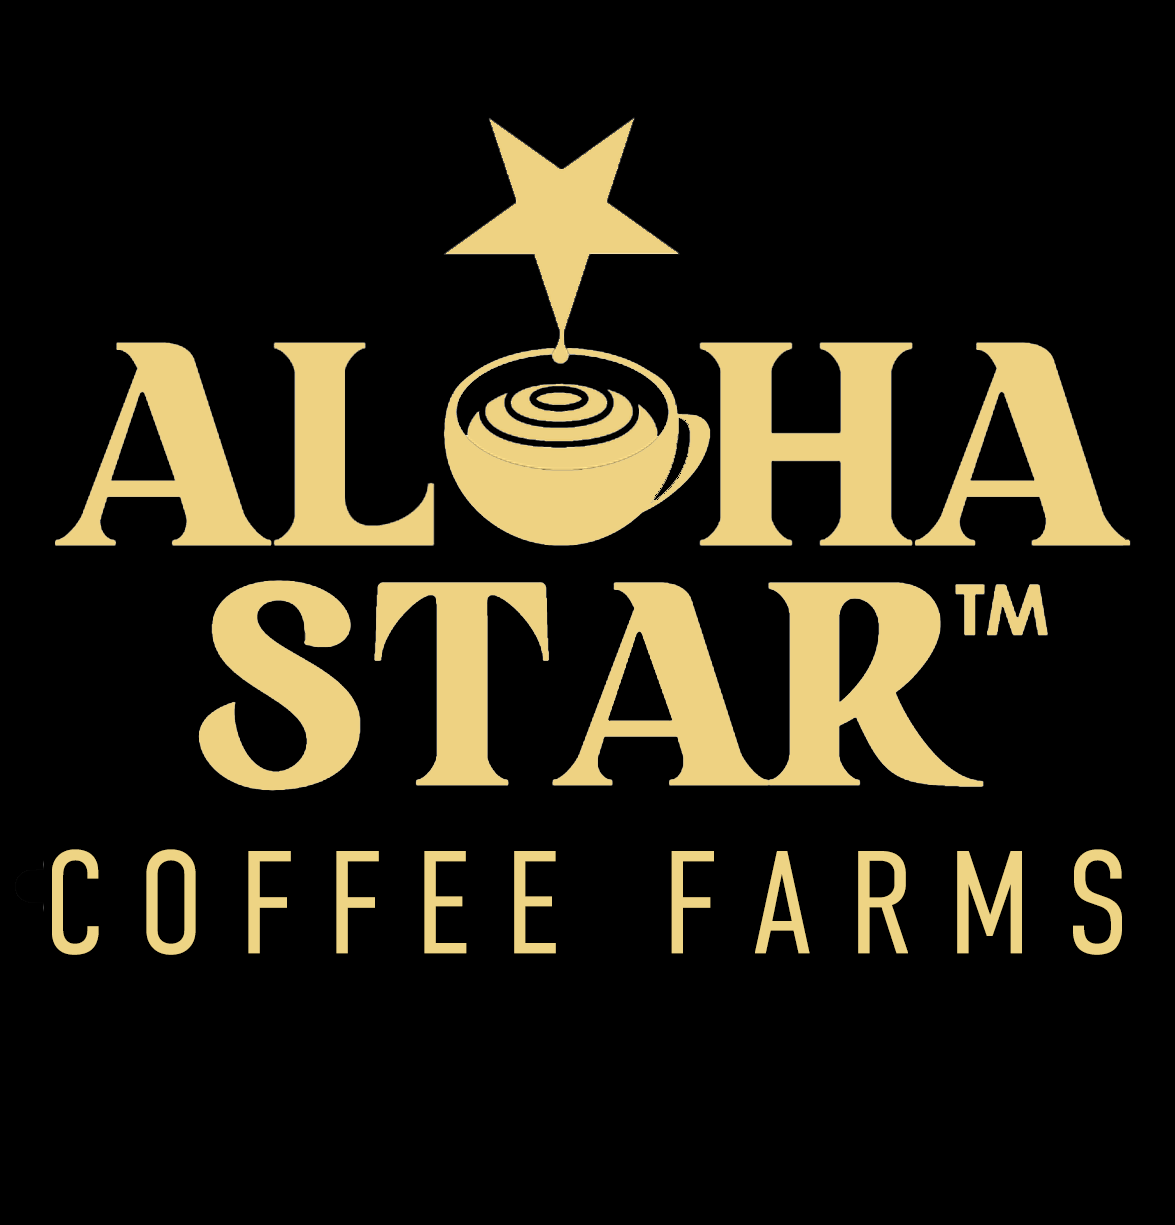 Aloha Star 100% Kona Coffee Farm